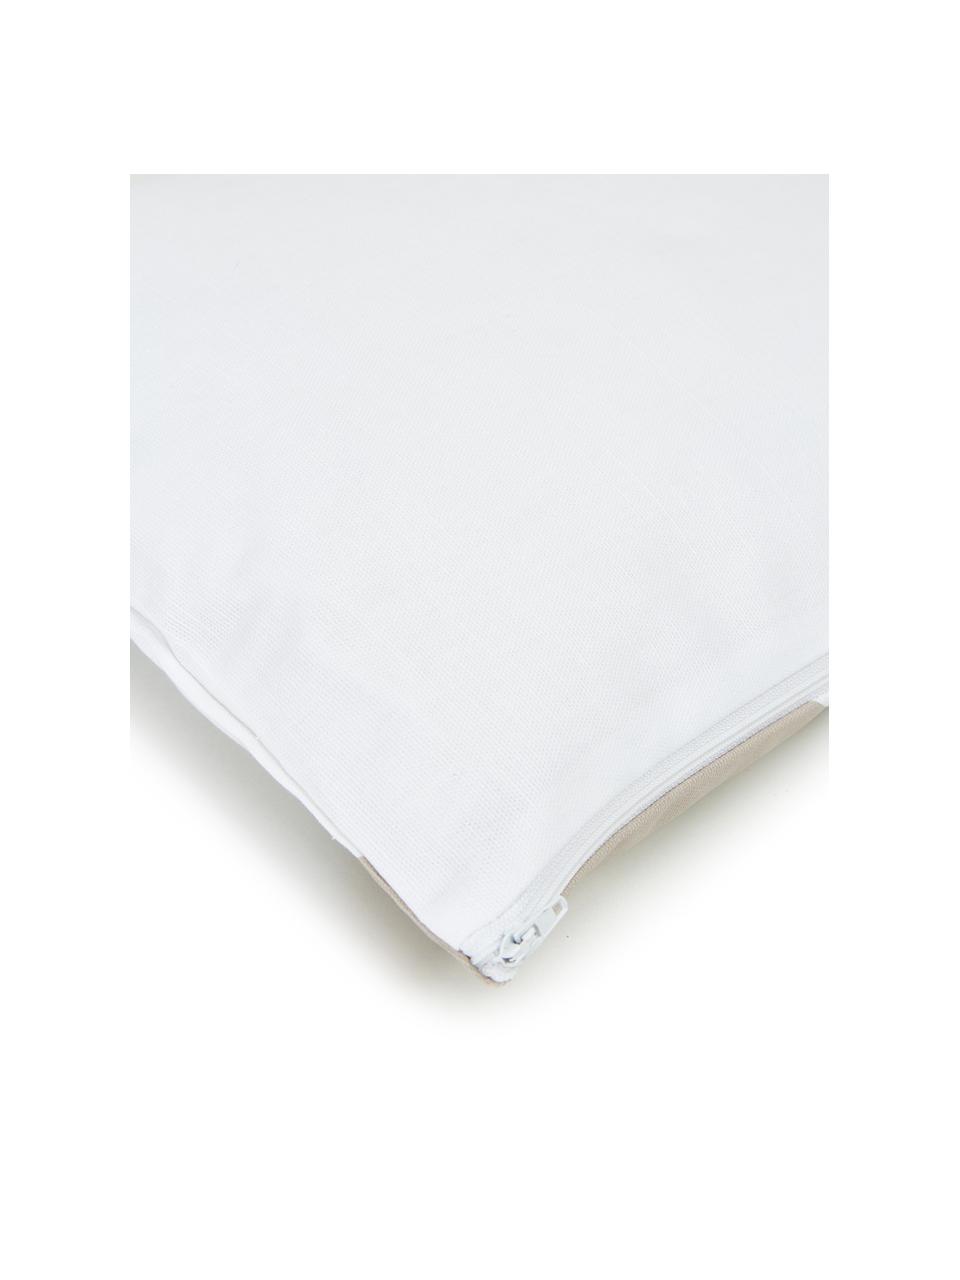 Federa arredo a strisce in cotone taupe/bianco Ren, 100% cotone, Bianco, beige, Larg. 30 x Lung. 50 cm